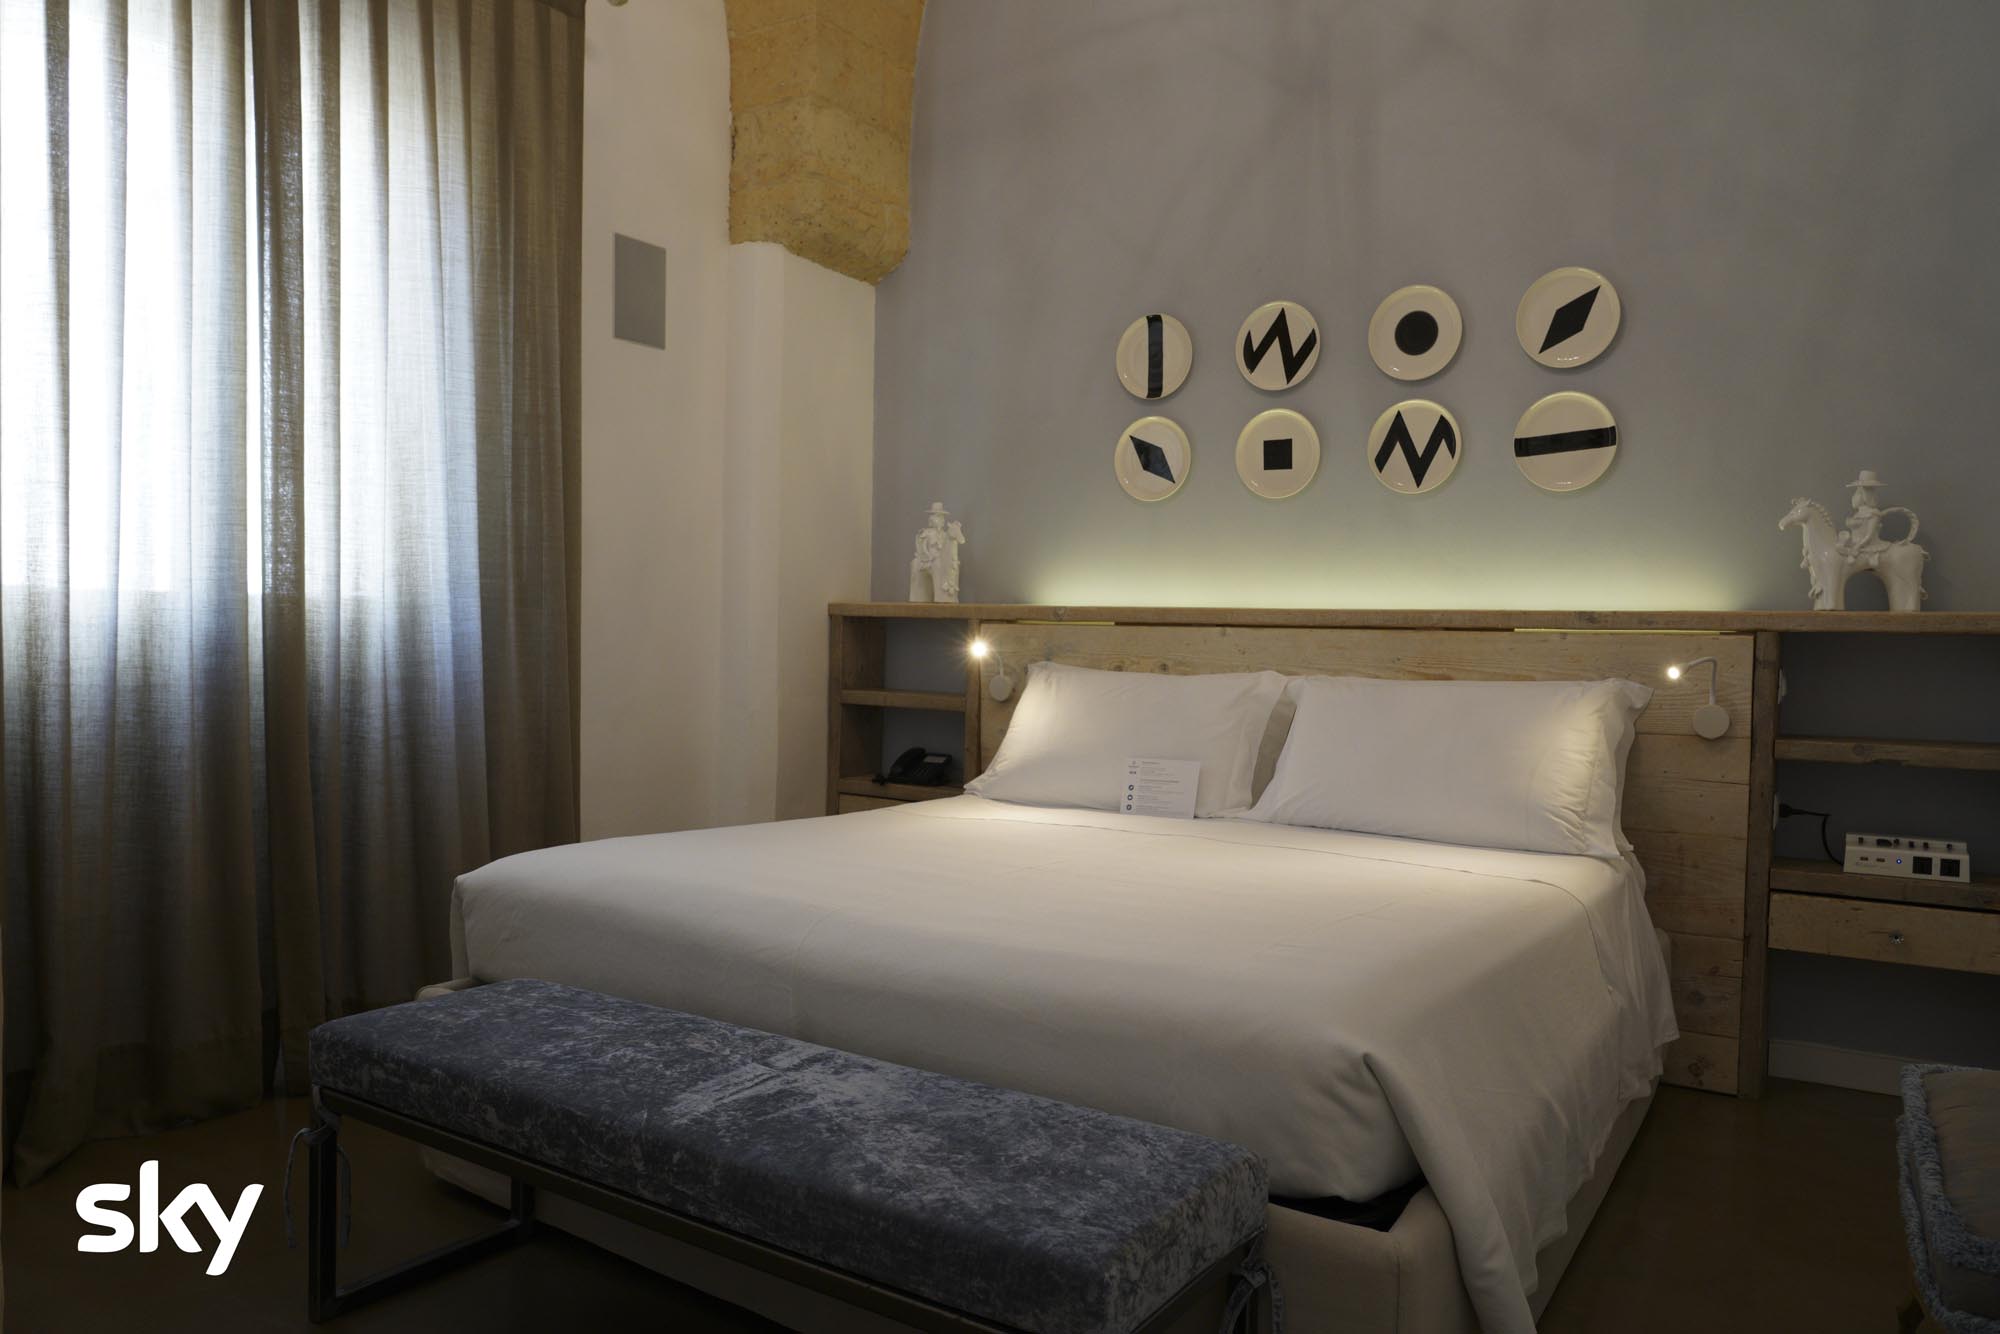 Bruno Barbieri - 4 Hotel - 4a edizione - Tappa Lecce [credit: courtesy of Sky]